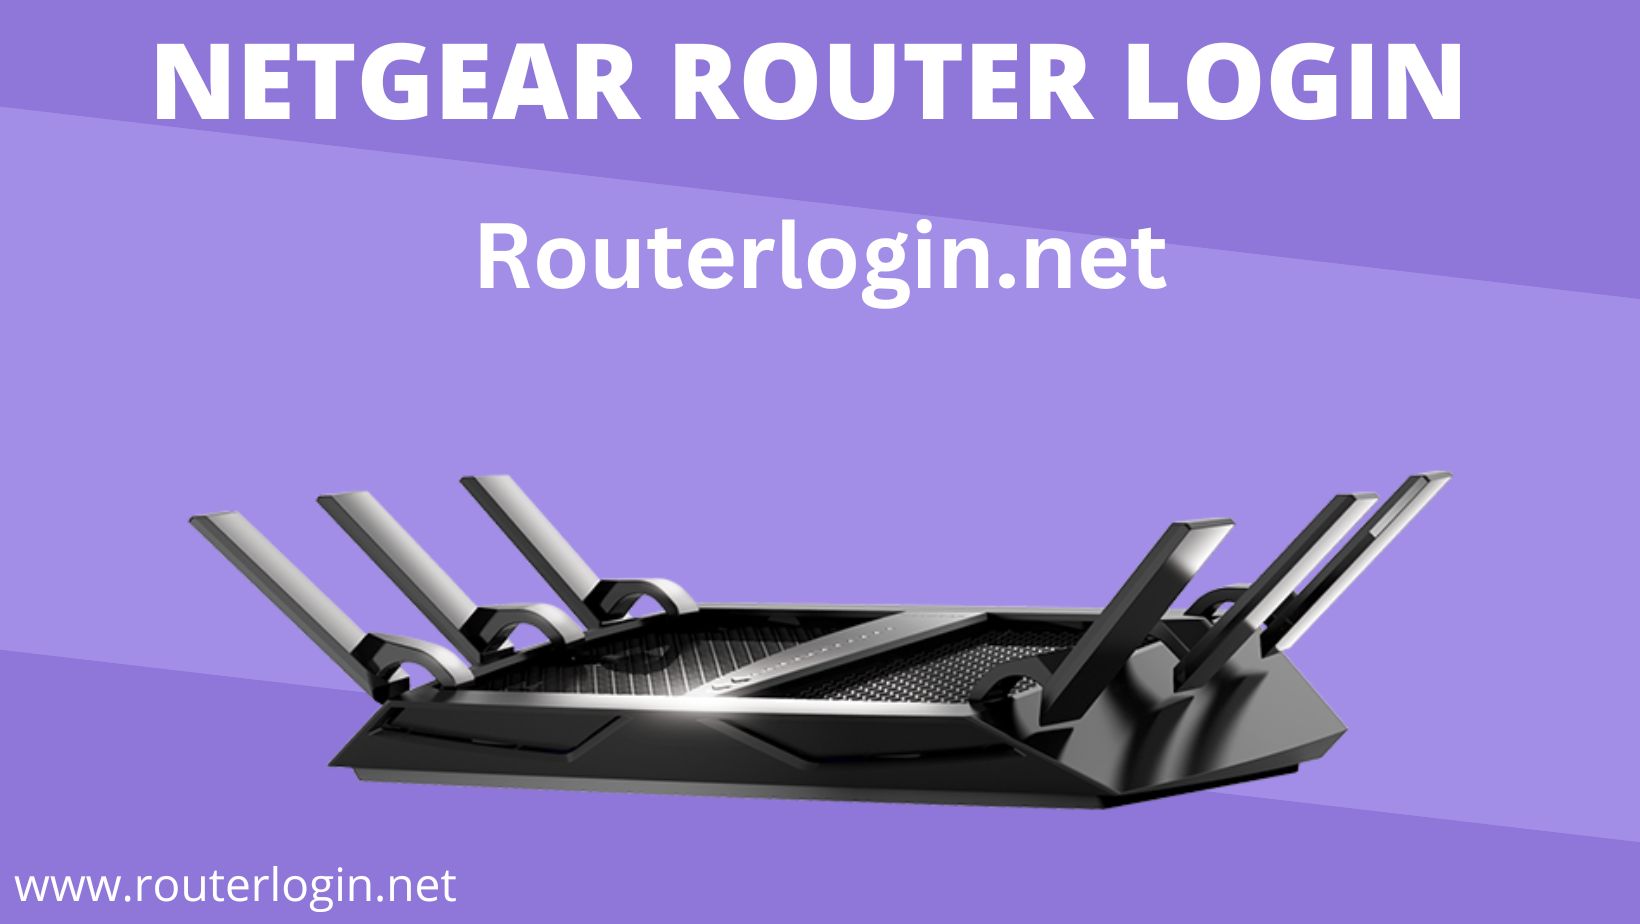 NETGEAR Router Login - routerlogin.net - 192.168.1.1